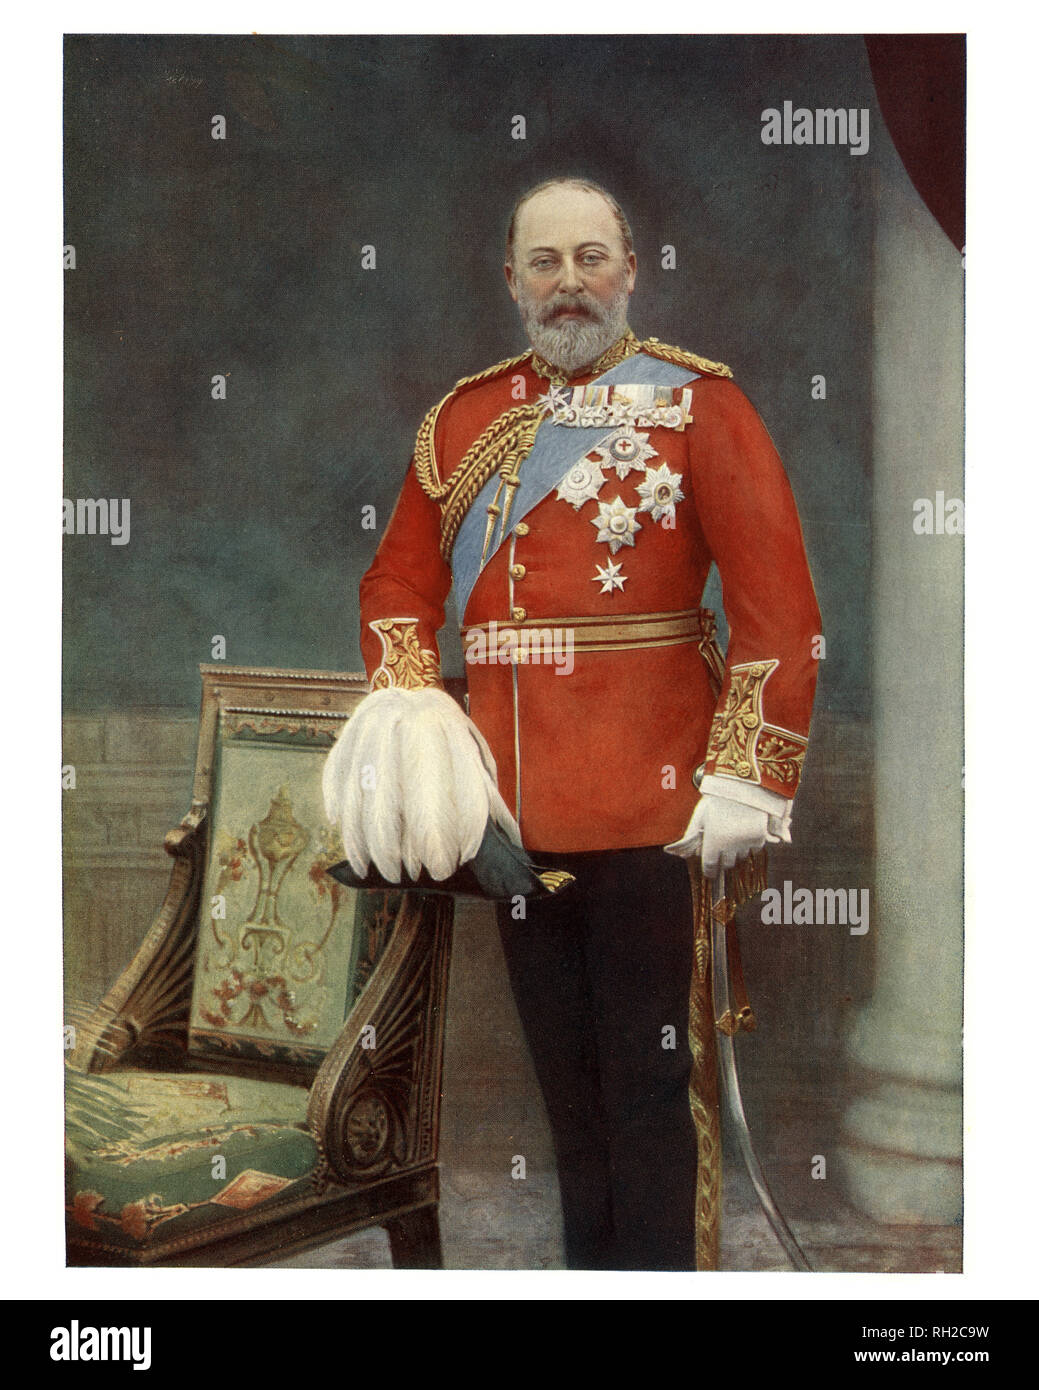 Edward VII (Albert Edward; 9 novembre 1841 al 6 maggio 1910) era il re del Regno Unito di Gran Bretagna e Irlanda e Imperatore dell'India a partire dal 22 gennaio 1901 fino alla sua morte nel 1910. Foto Stock